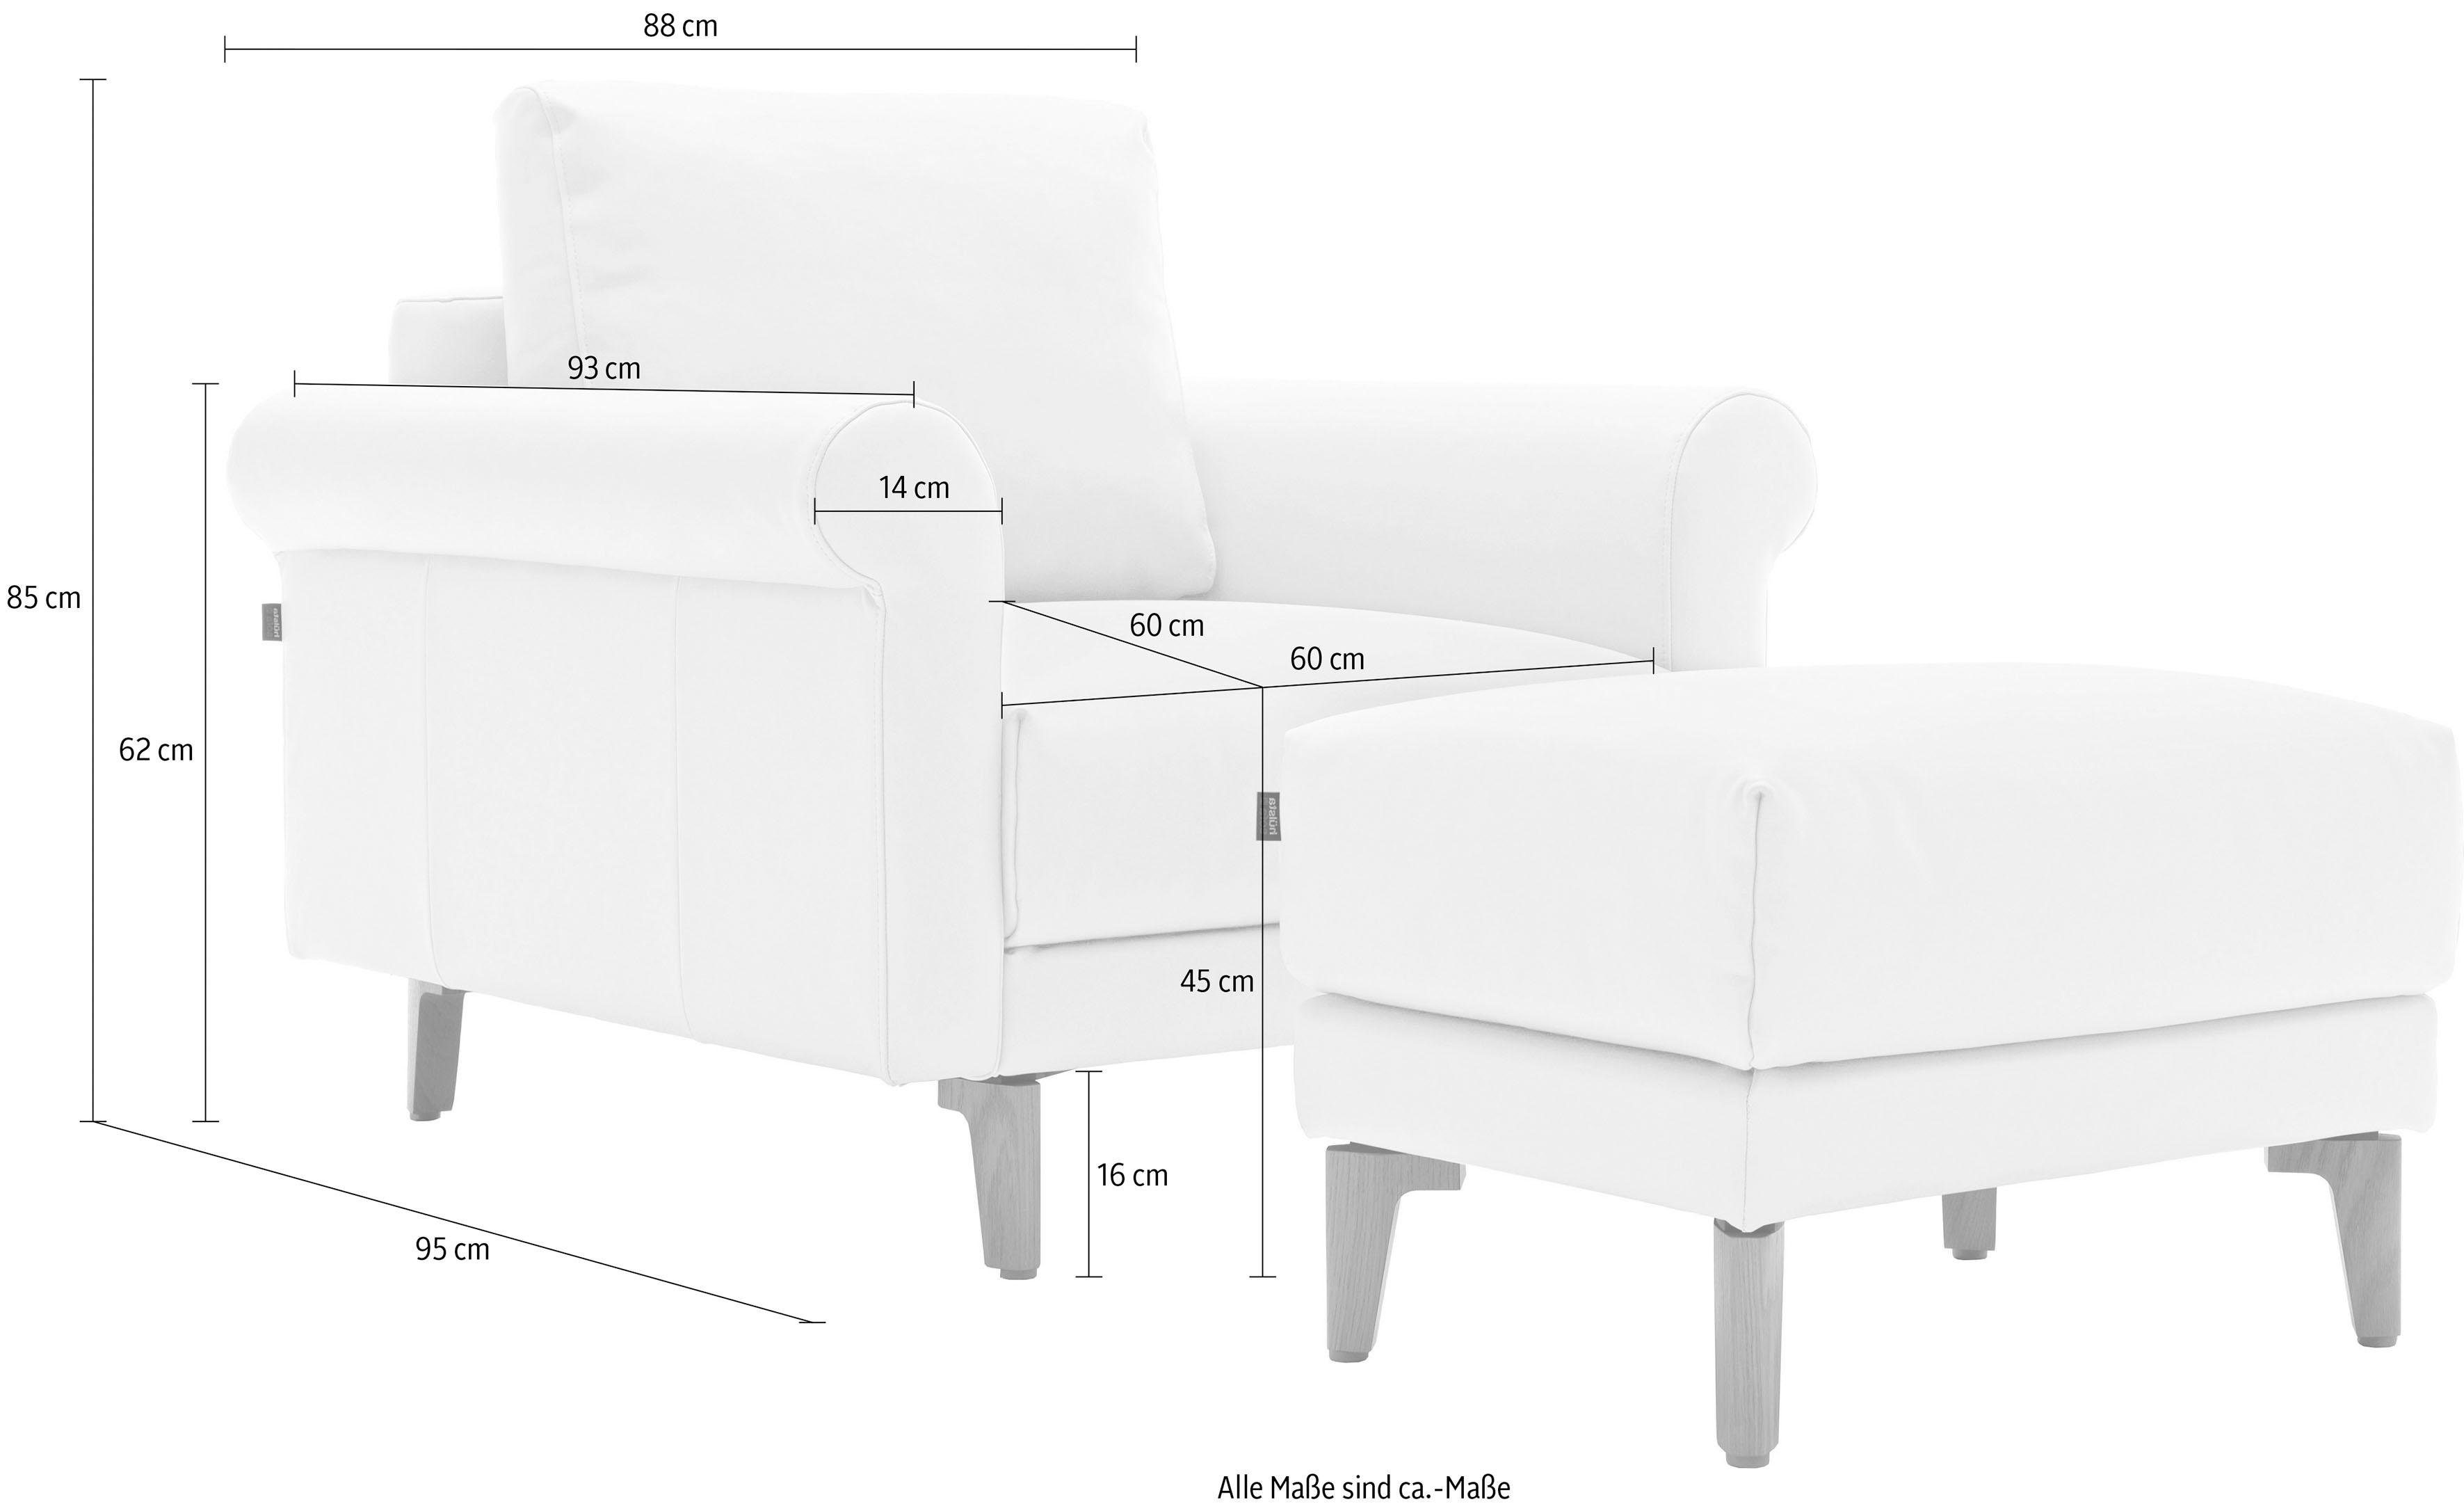 hülsta sofa Sessel hs.450, modern Fuß Nussbaum Landhaus, cm, Breite 88